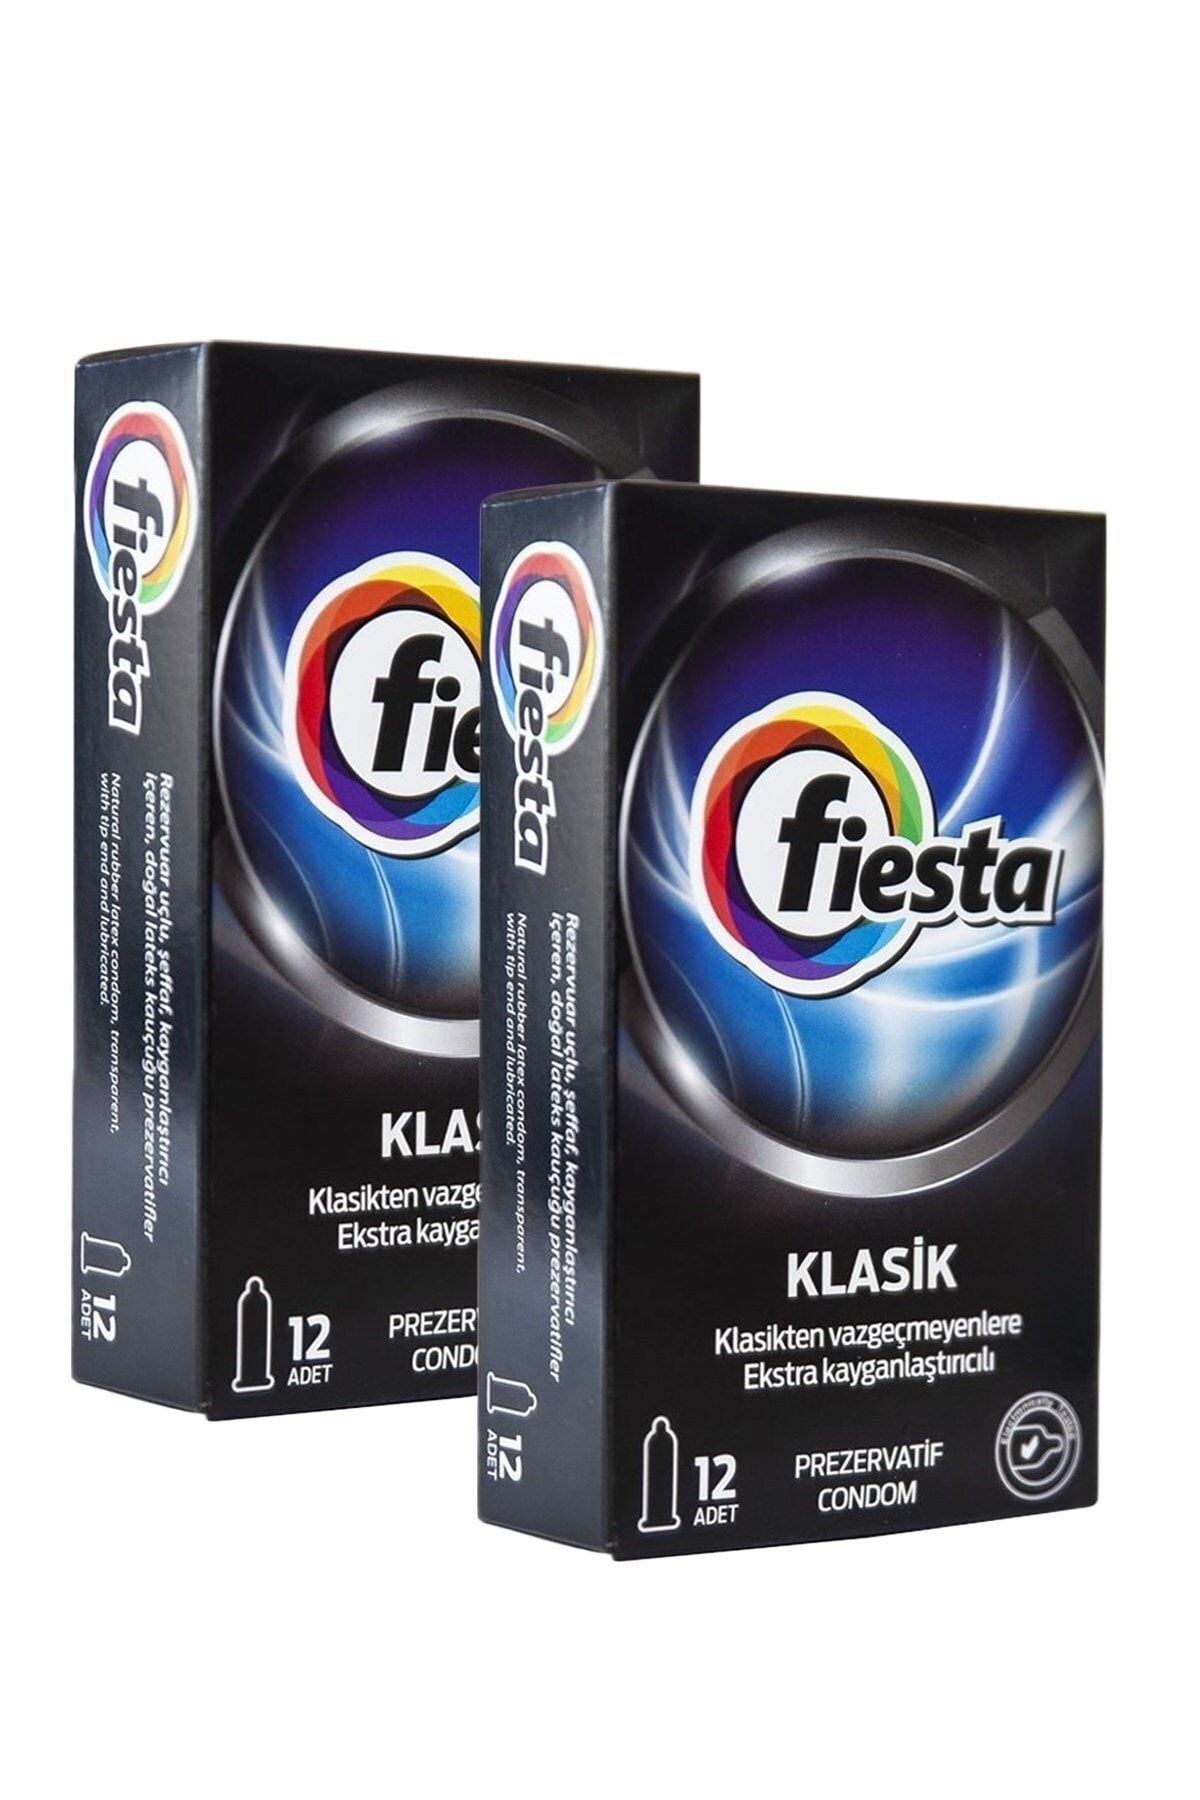 Fiesta Klasik Prezervatif 2'li Ekonomik Paket